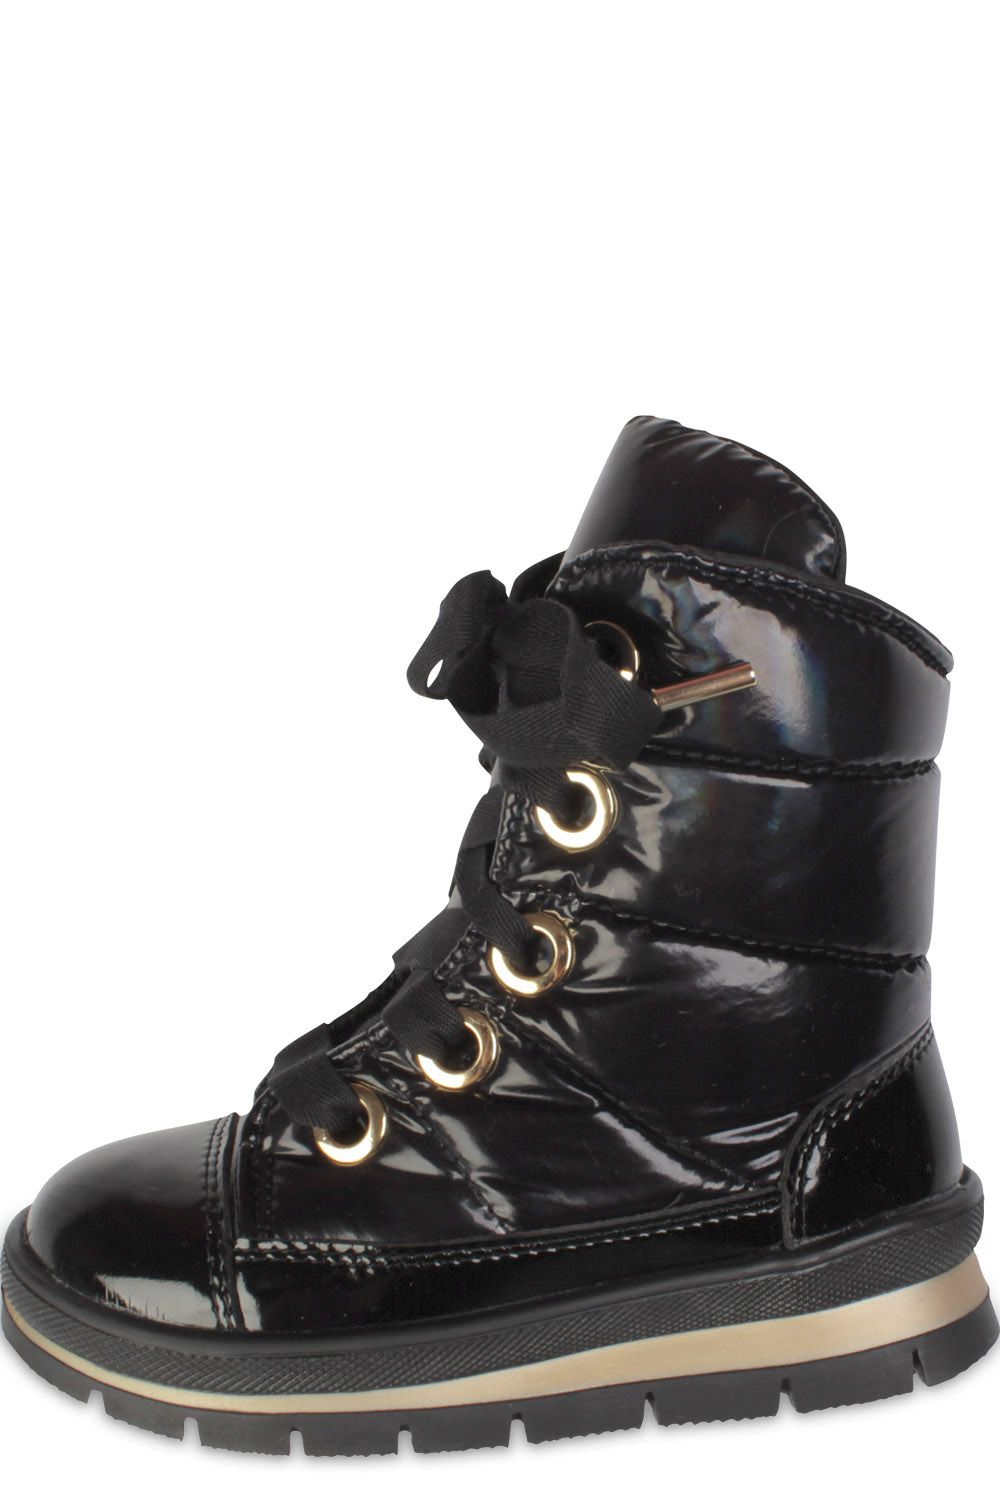 Ботинки JogDog, размер 30, цвет черный 13008R - фото 1